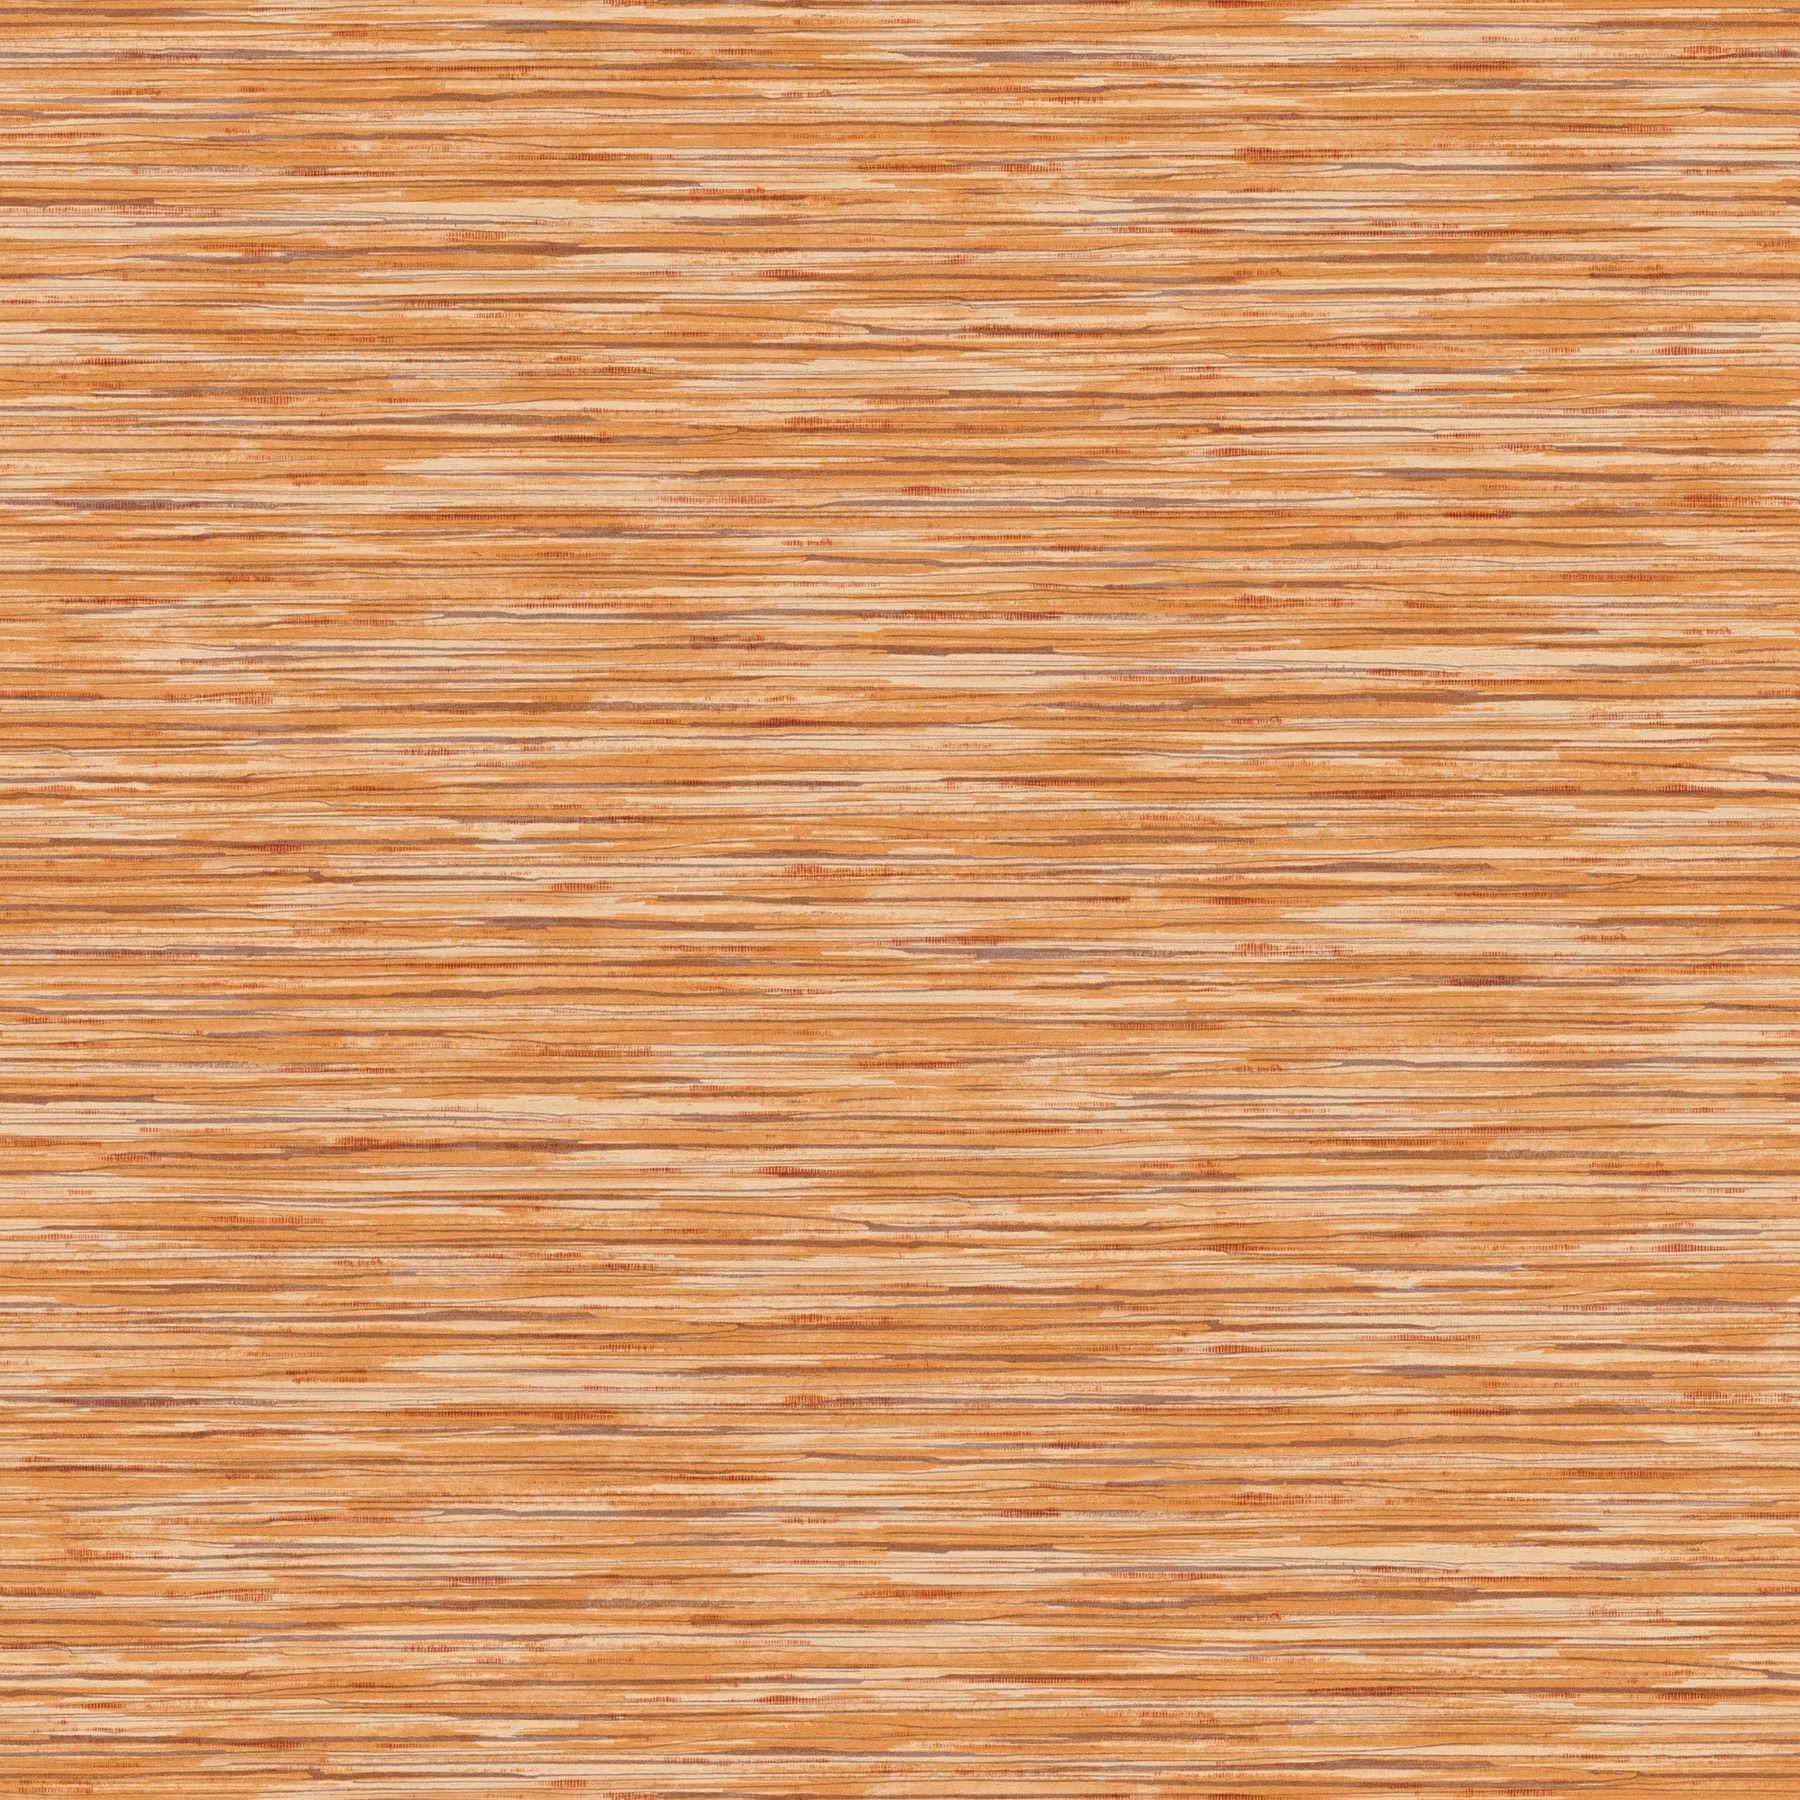 Vliestapete meliert mit Farbmusterung – Orange, Braun
